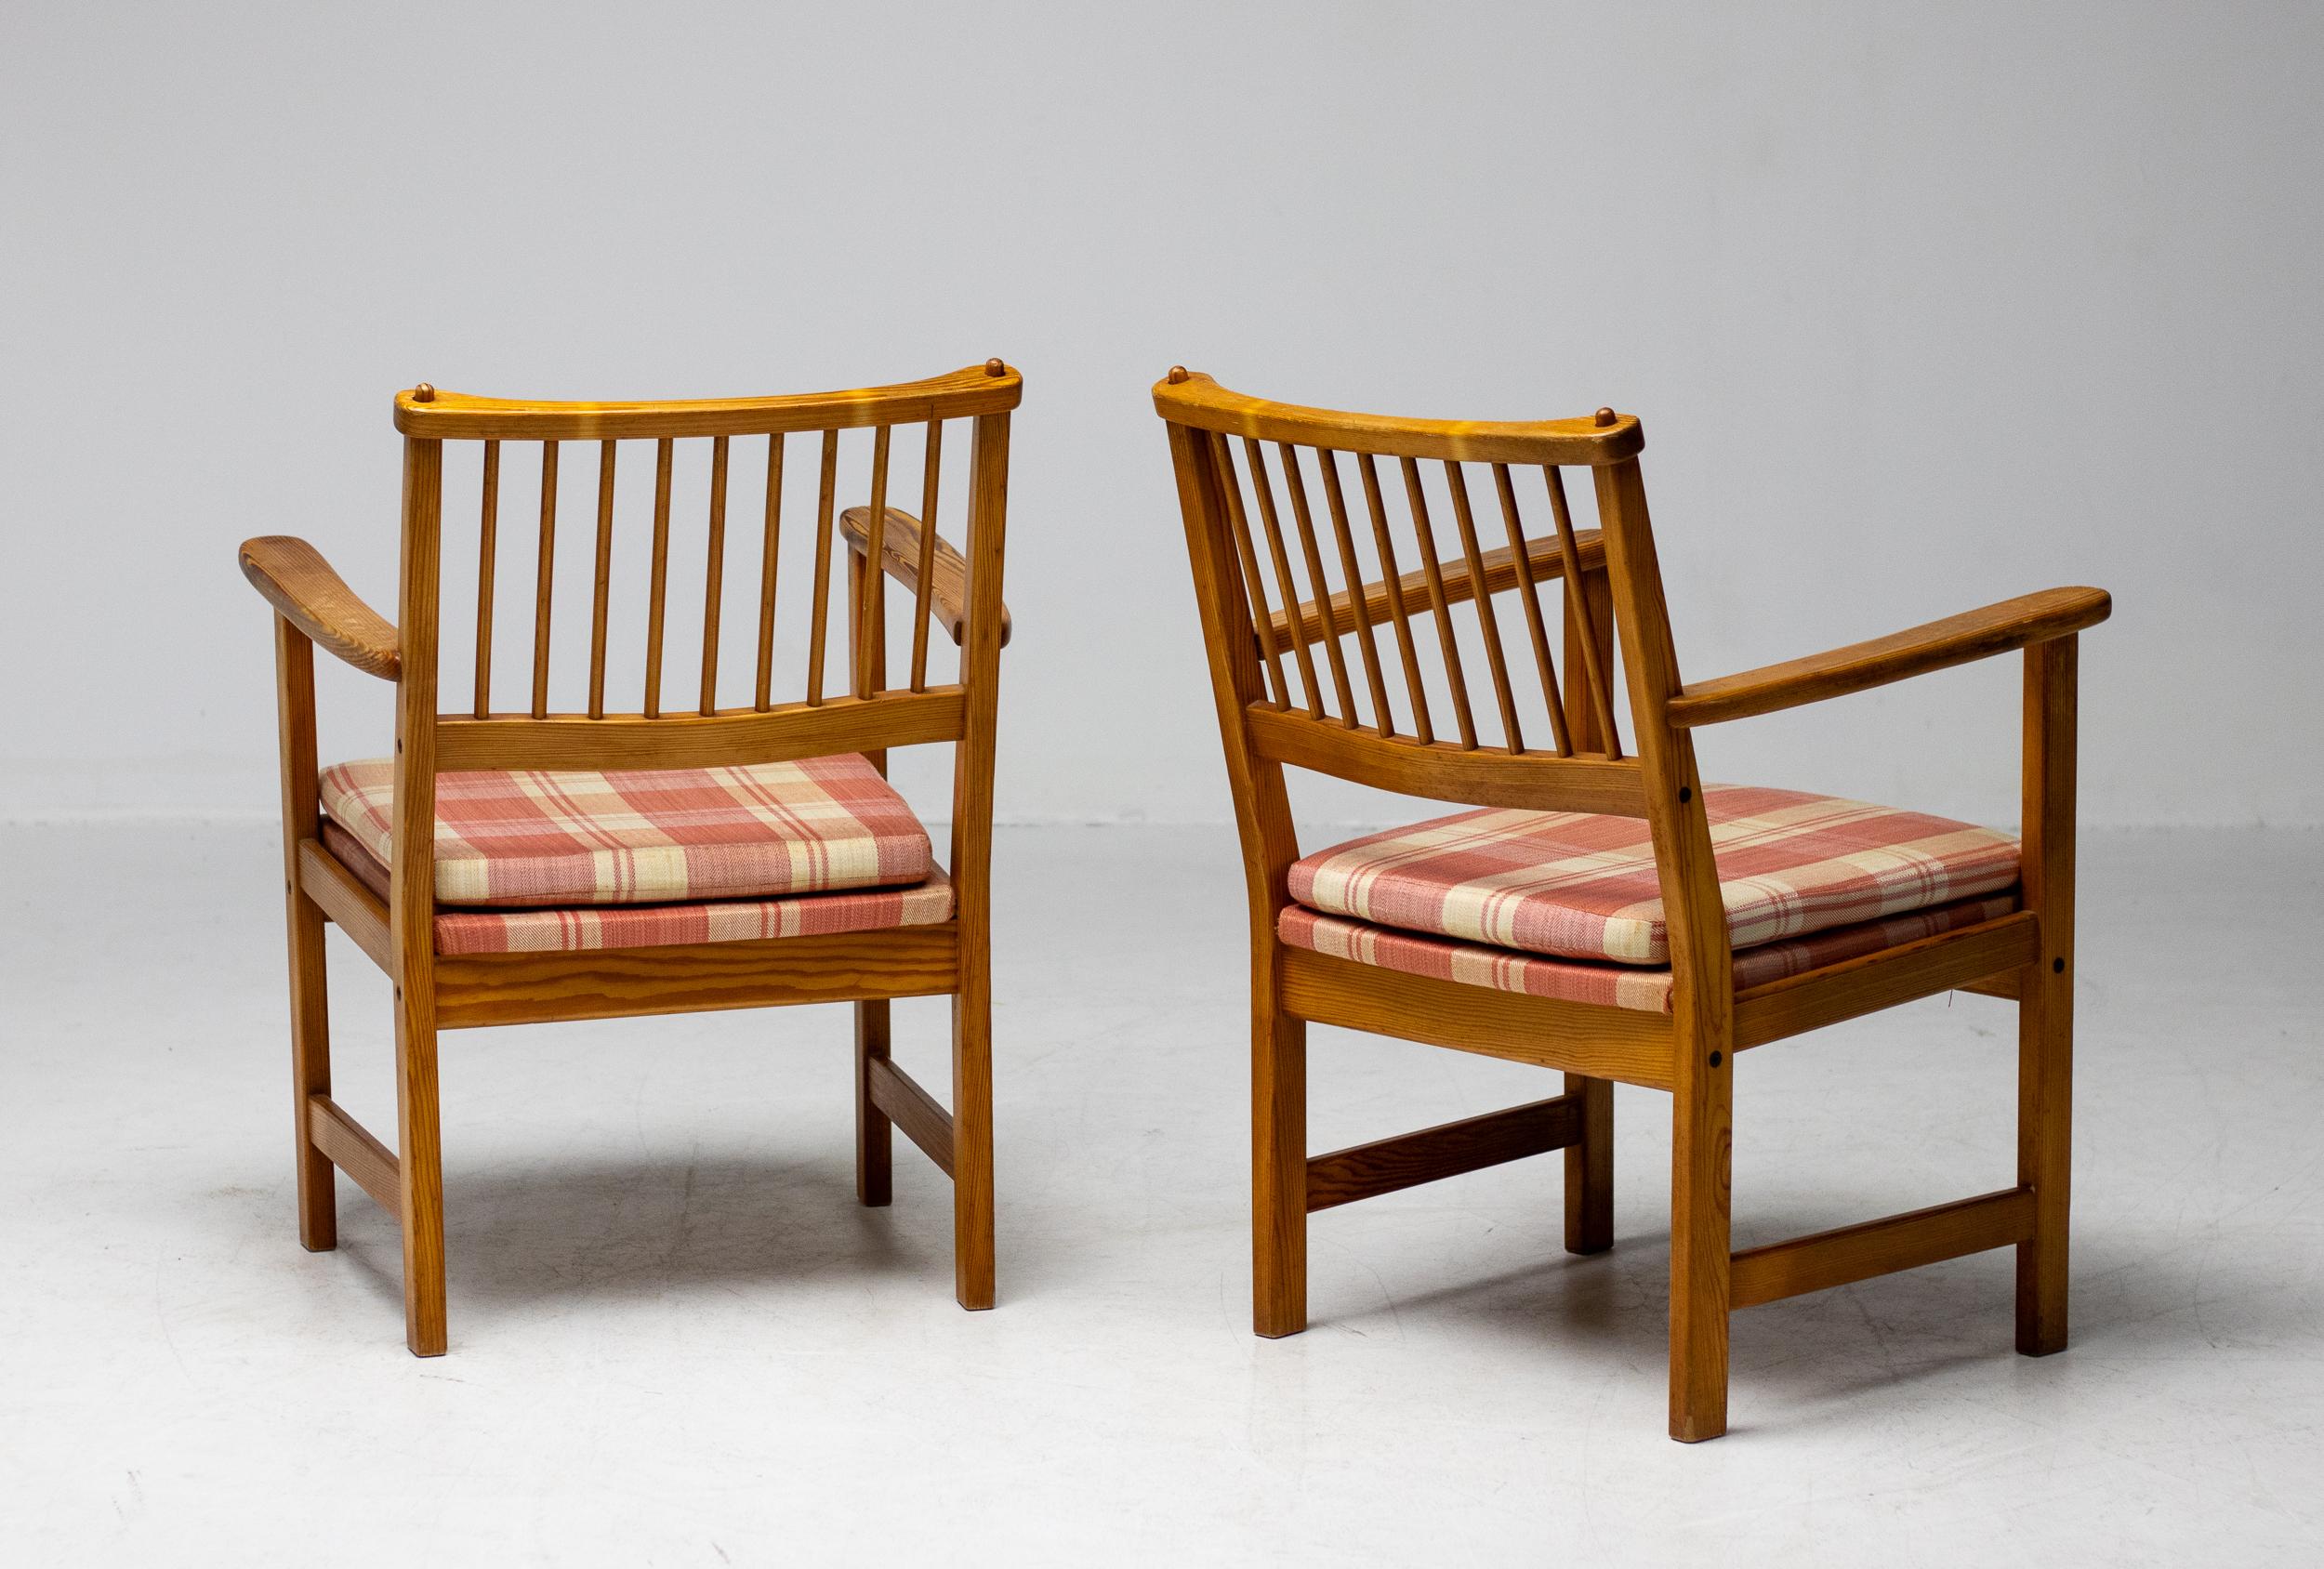 Der Gründer von Swedese, Yngve Ekström, war in den 1950er und 60er Jahren einer der führenden Möbeldesigner Schwedens. Die organische und schlichte Eleganz dieser Stühle ist typisch für Ekströms Herangehensweise an das Möbeldesign, bei dem es vor